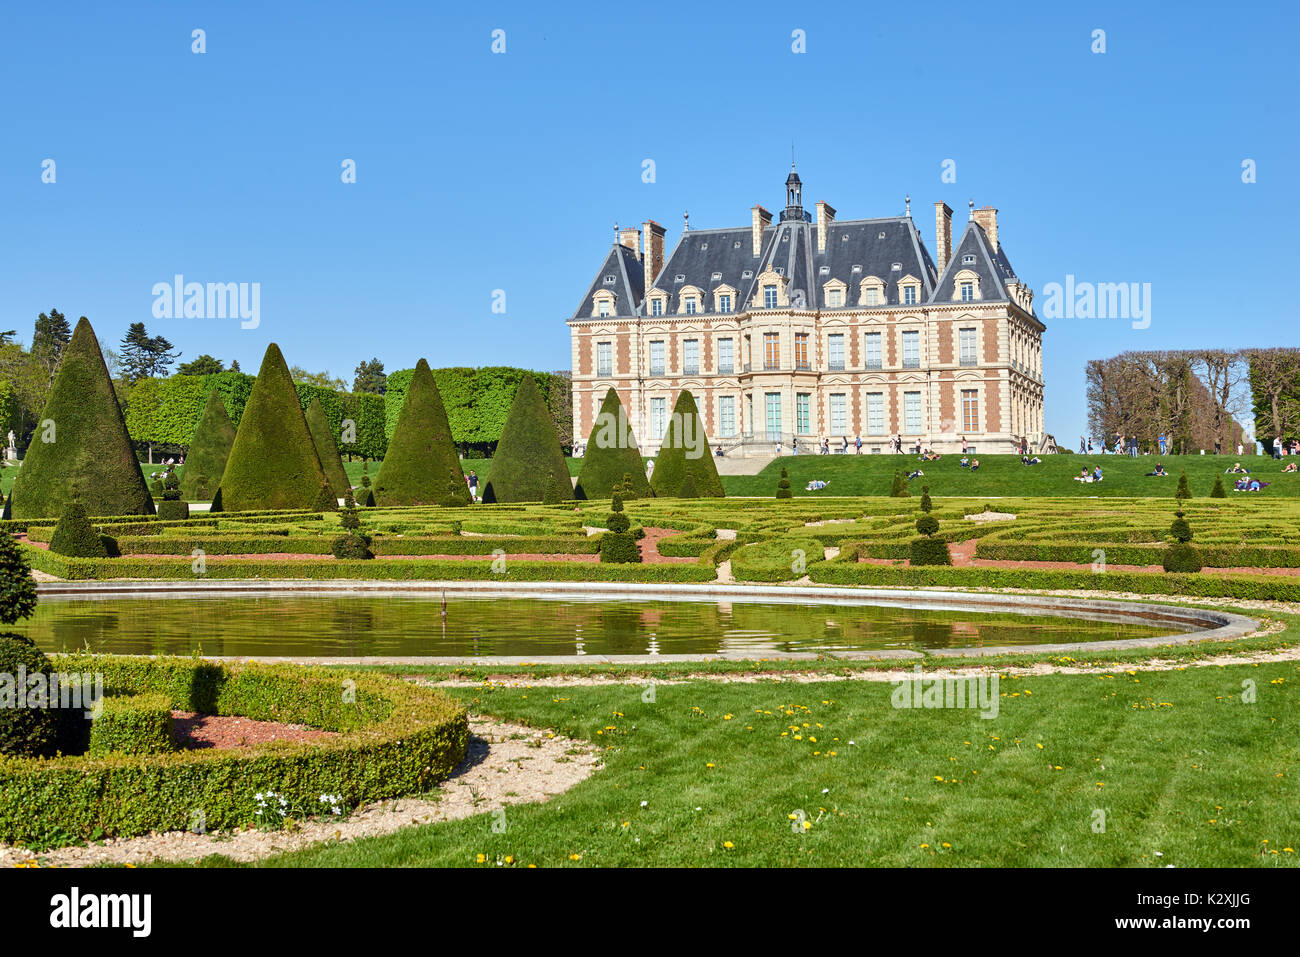 Château de Sceaux, Sceaux, France Stock Photo